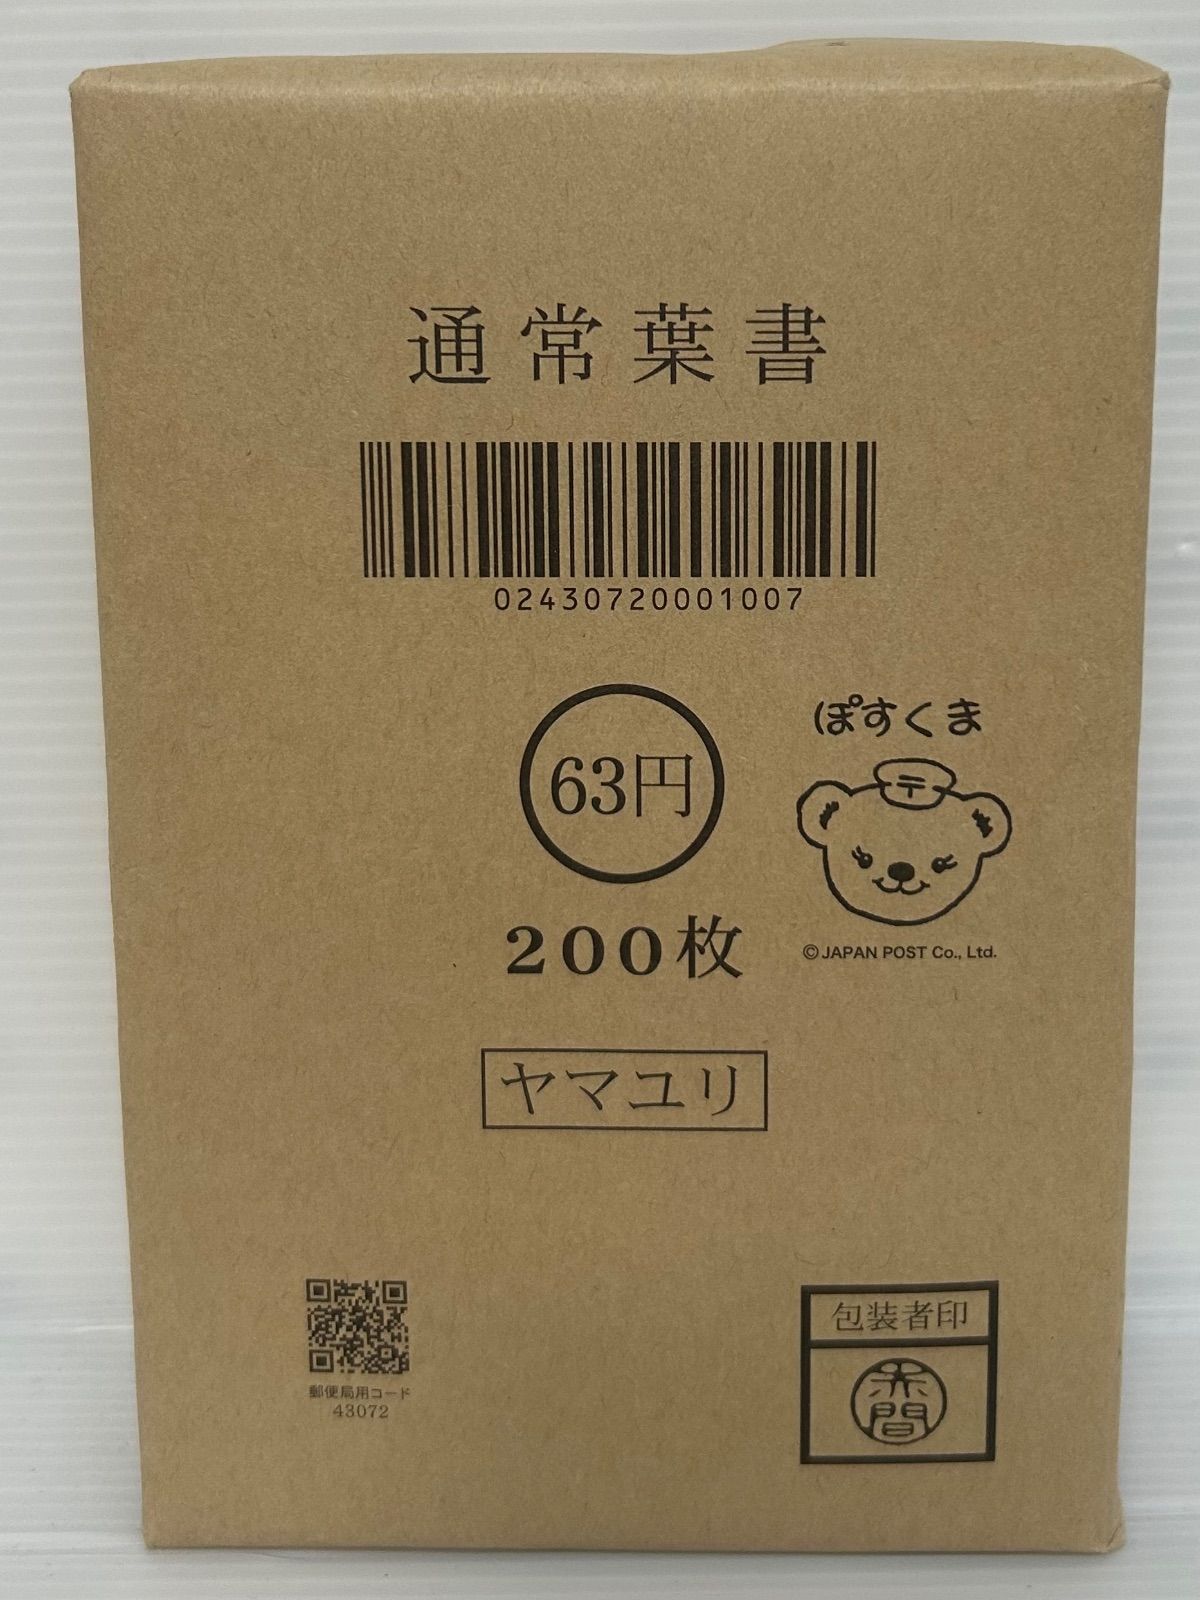 官製ハガキ インクジェット 63円×200枚 通常葉書 A0606-1 | agb.md